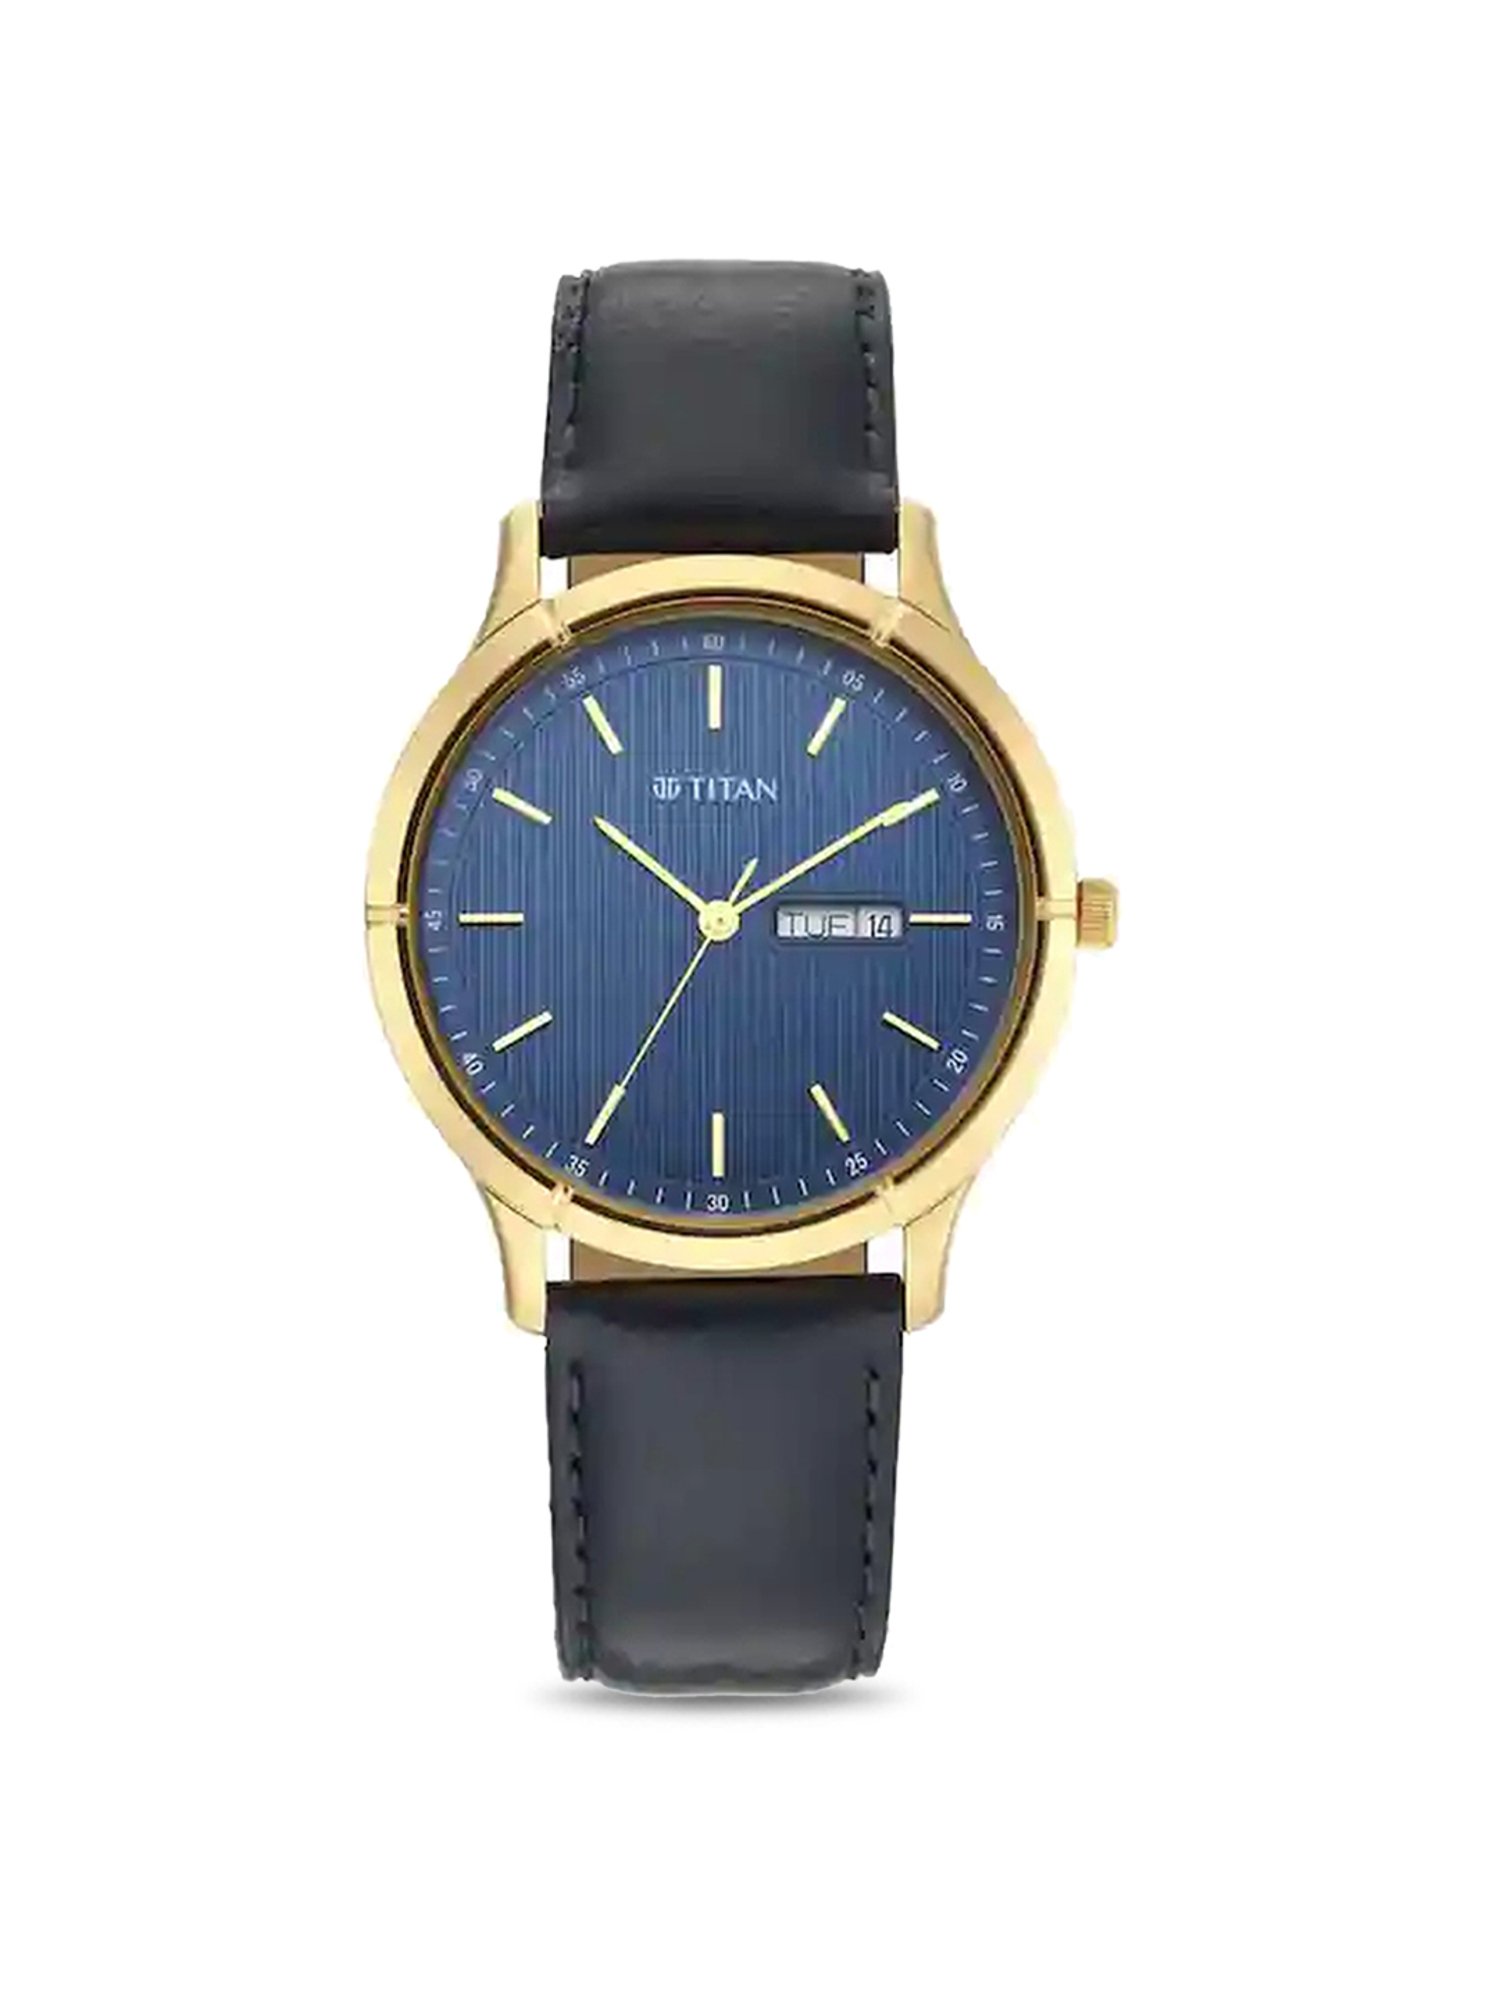 Wristwatches | Watches | Clock | Quartz Wristwatches - Woman Watches Luxury  Brand Quartz - Aliexpress